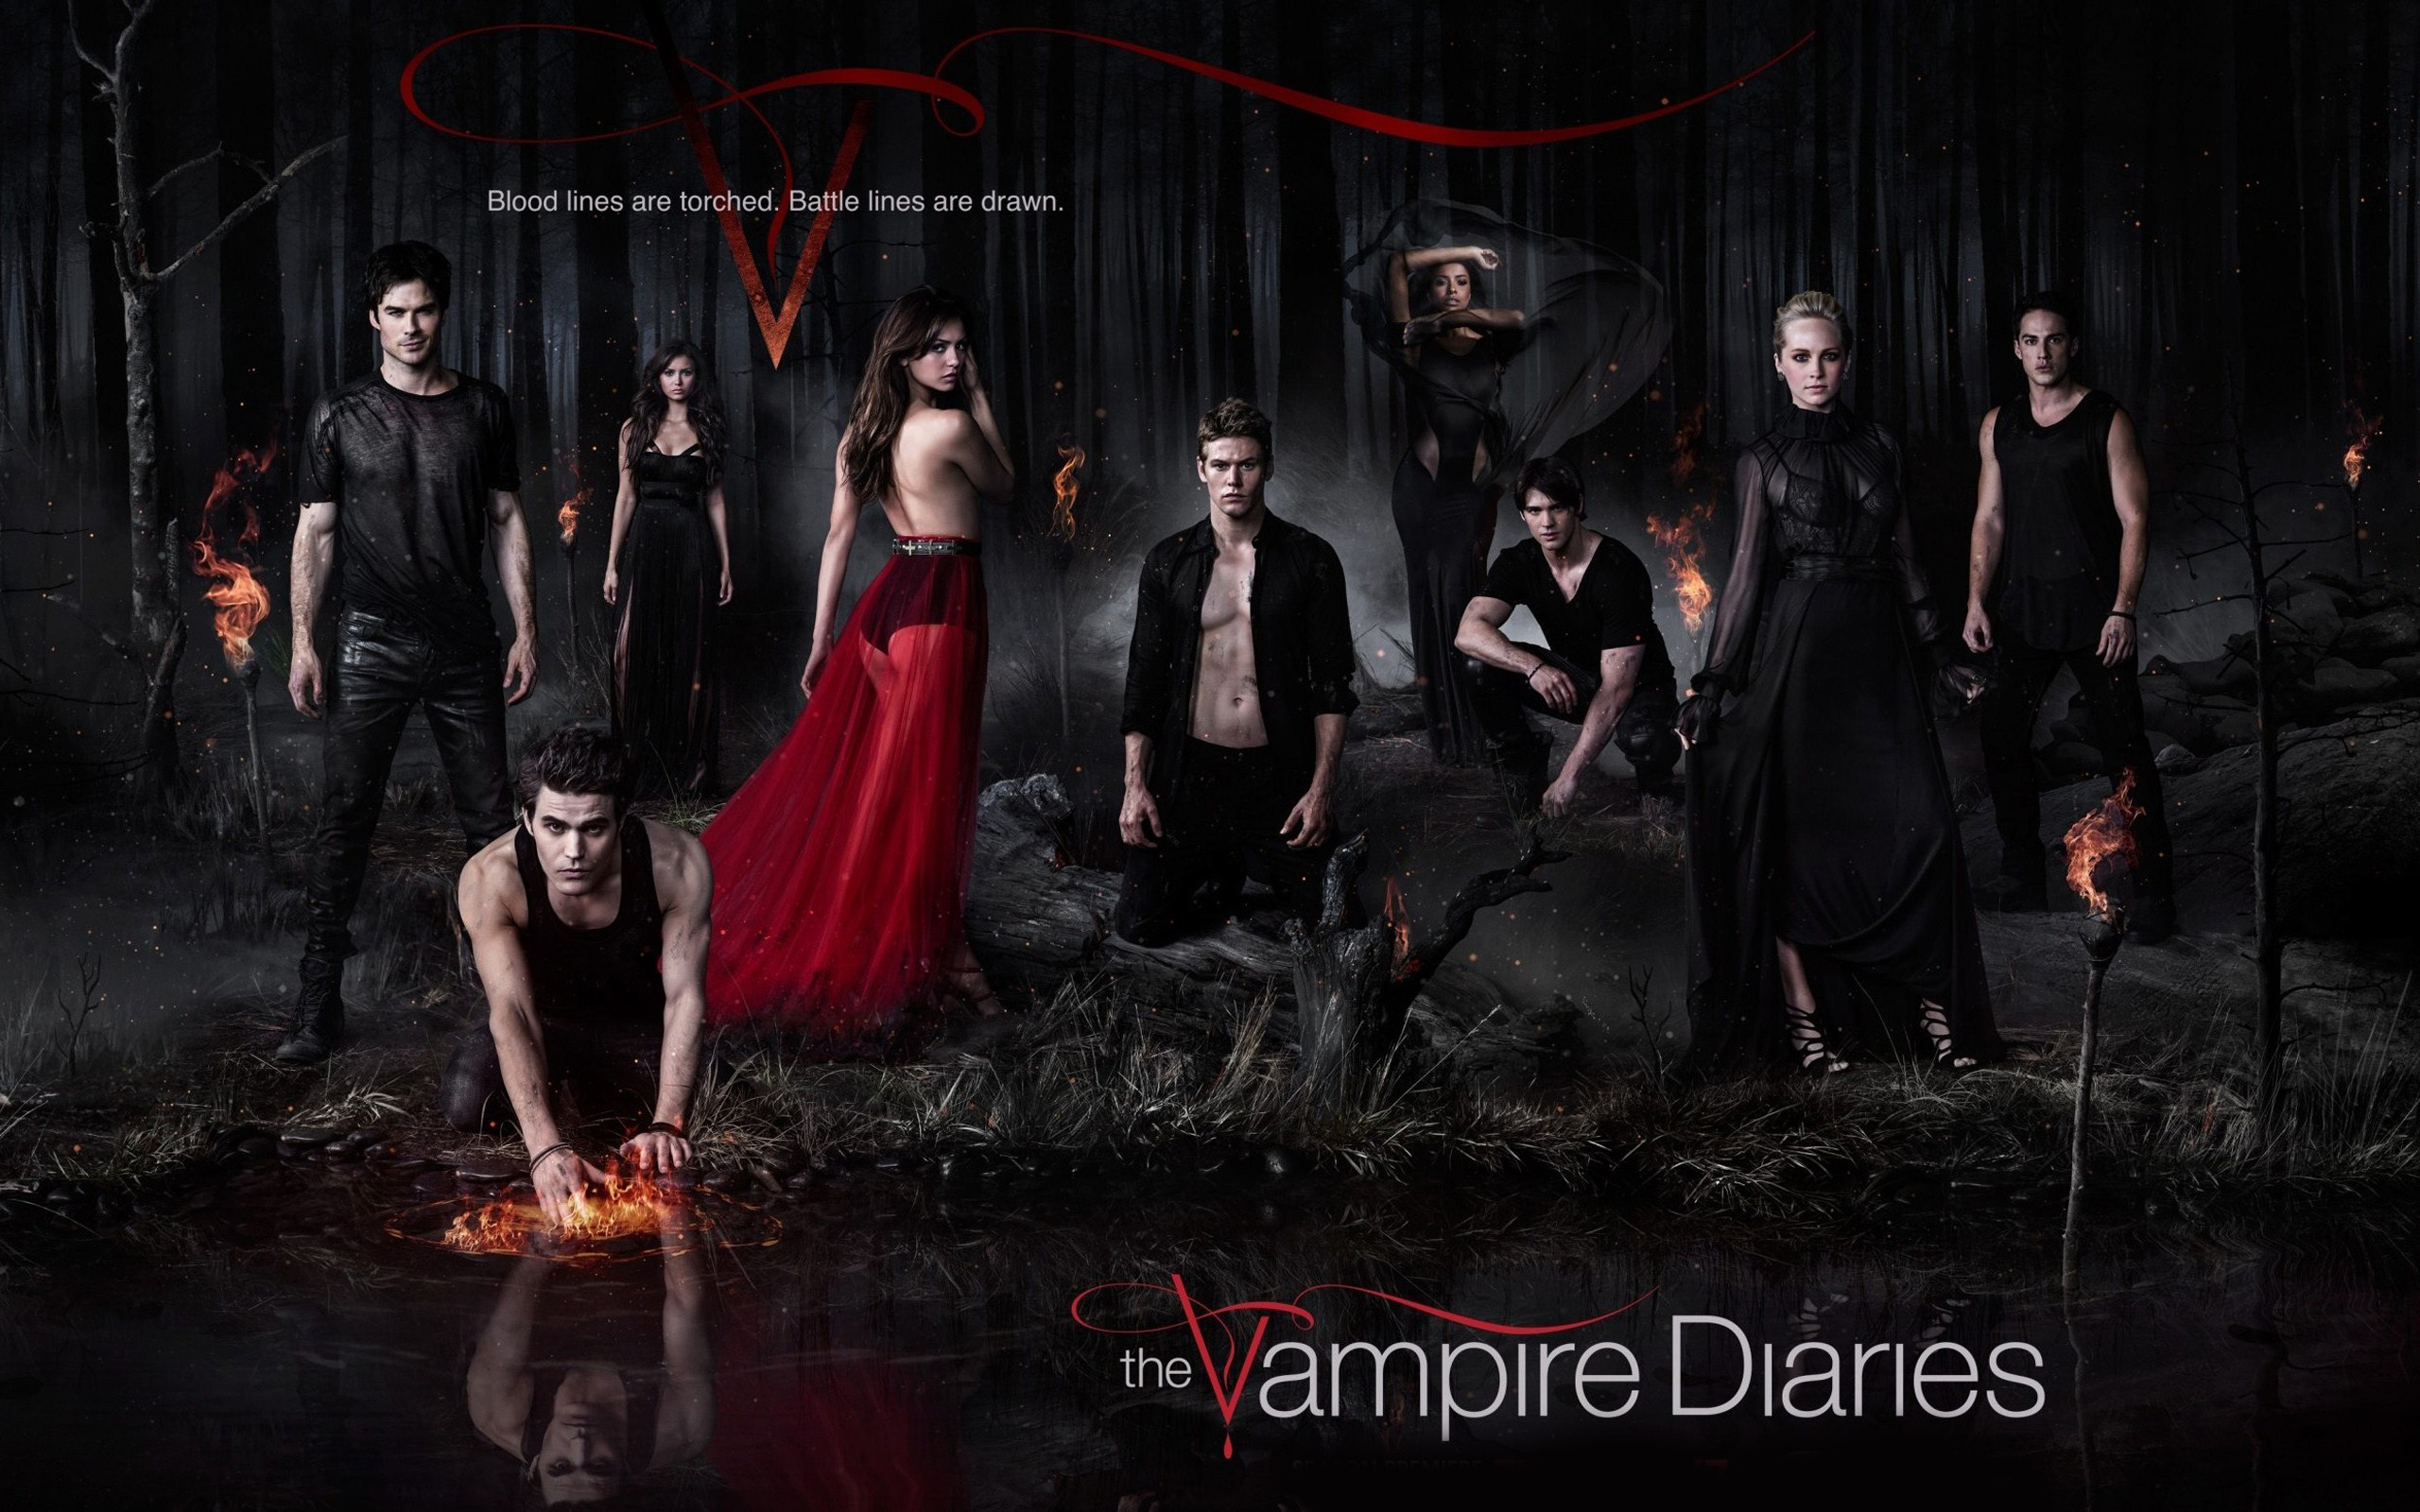 justpict.com Vampire Diaries Season 5 Wallpaper